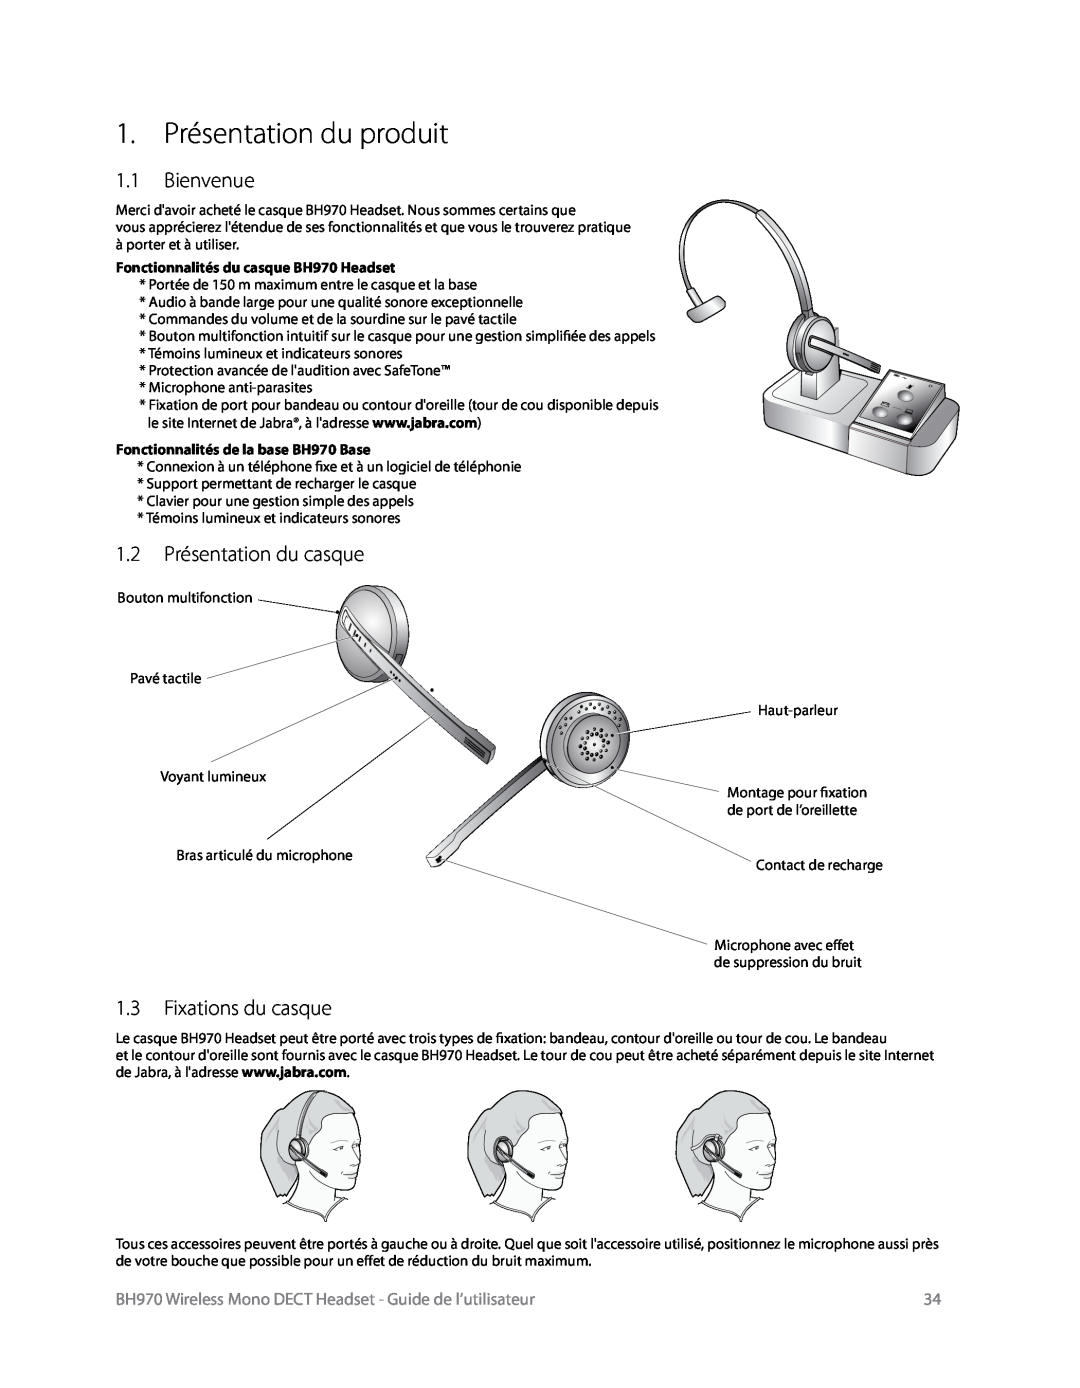 Logitech BH970 manual 1. Présentation du produit, 1.1Bienvenue, 1.2Présentation du casque, 1.3Fixations du casque 